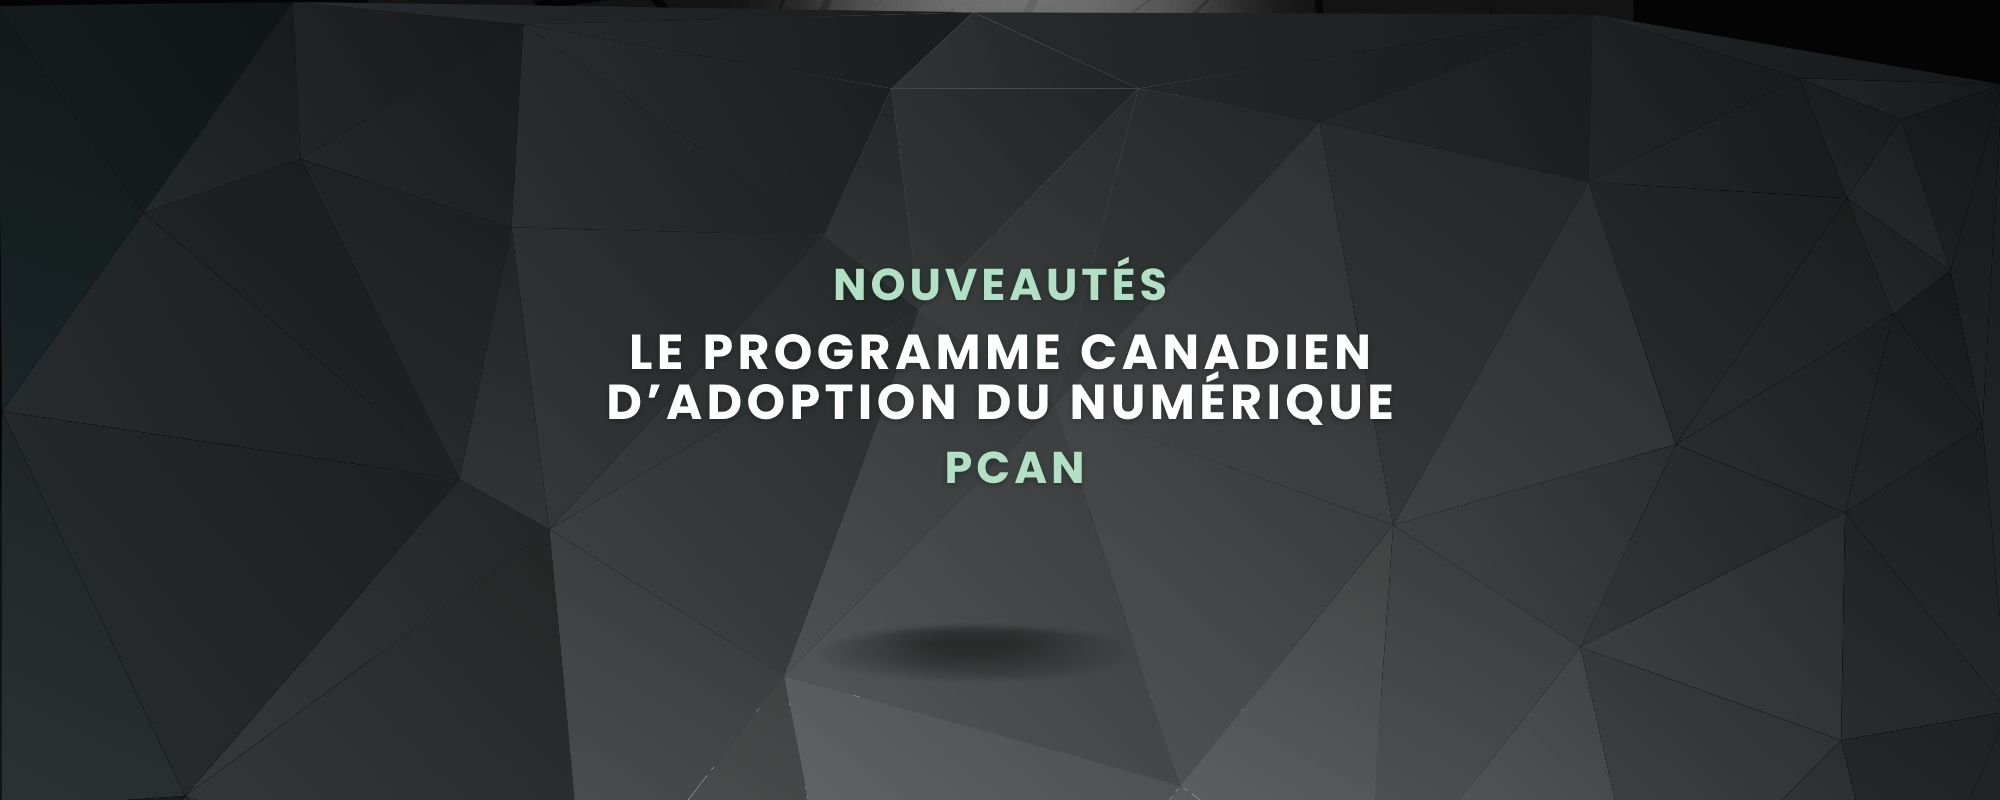 PCAN - Programme Canadien d'adoption du Numérique